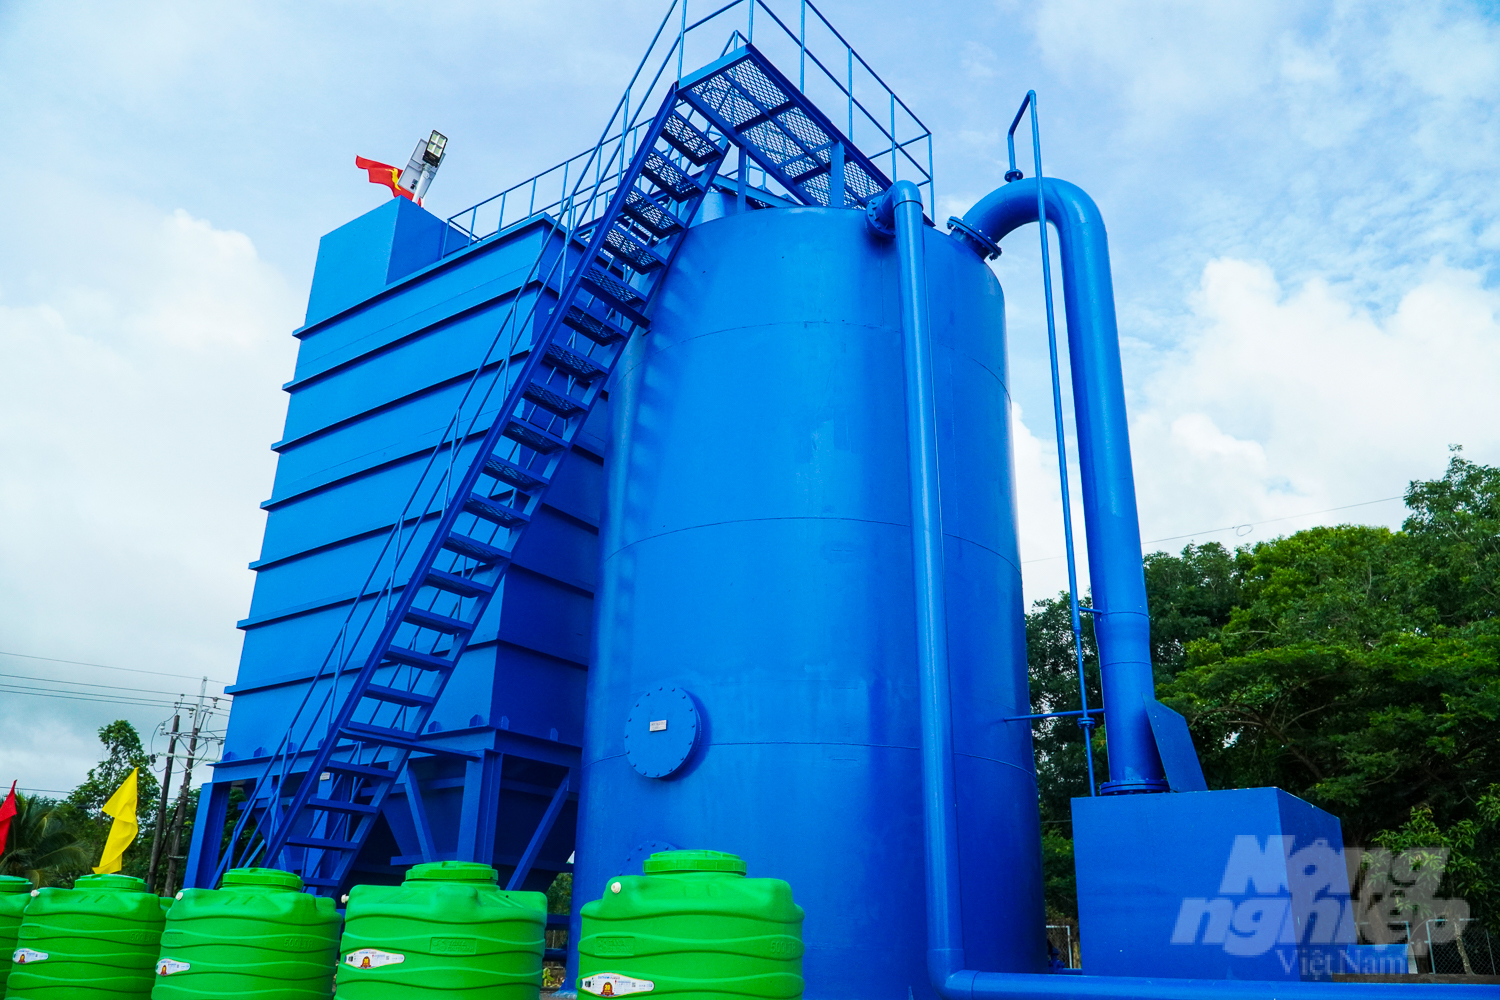 Trạm cấp nước tập trung xã Tân Hưng có công suất dự kiến 1.200 m3/ngày đêm. Phục vụ cung cấp nước sạch cho khoảng 400 hộ dân trên tuyến. Ảnh: Văn Vũ.